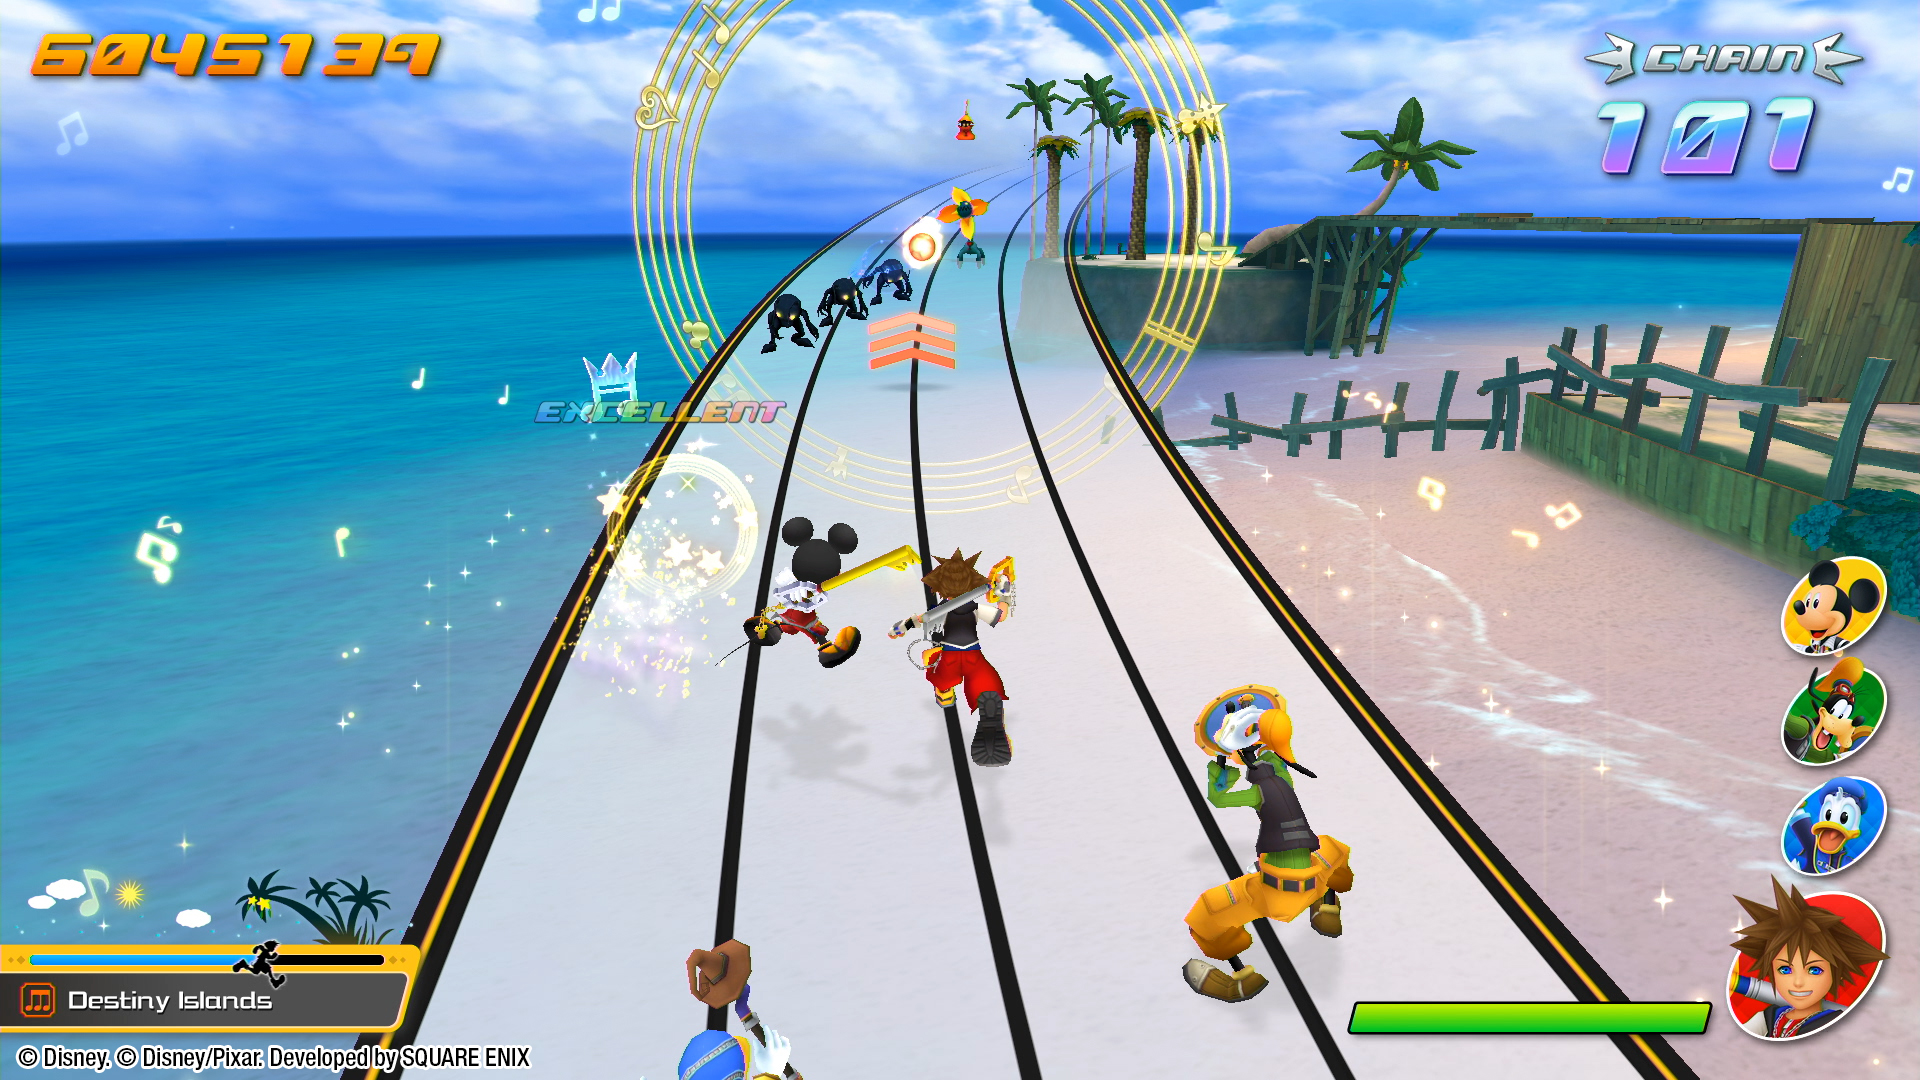 Kingdom Hearts: Melody of Memory screenshots show main menus and